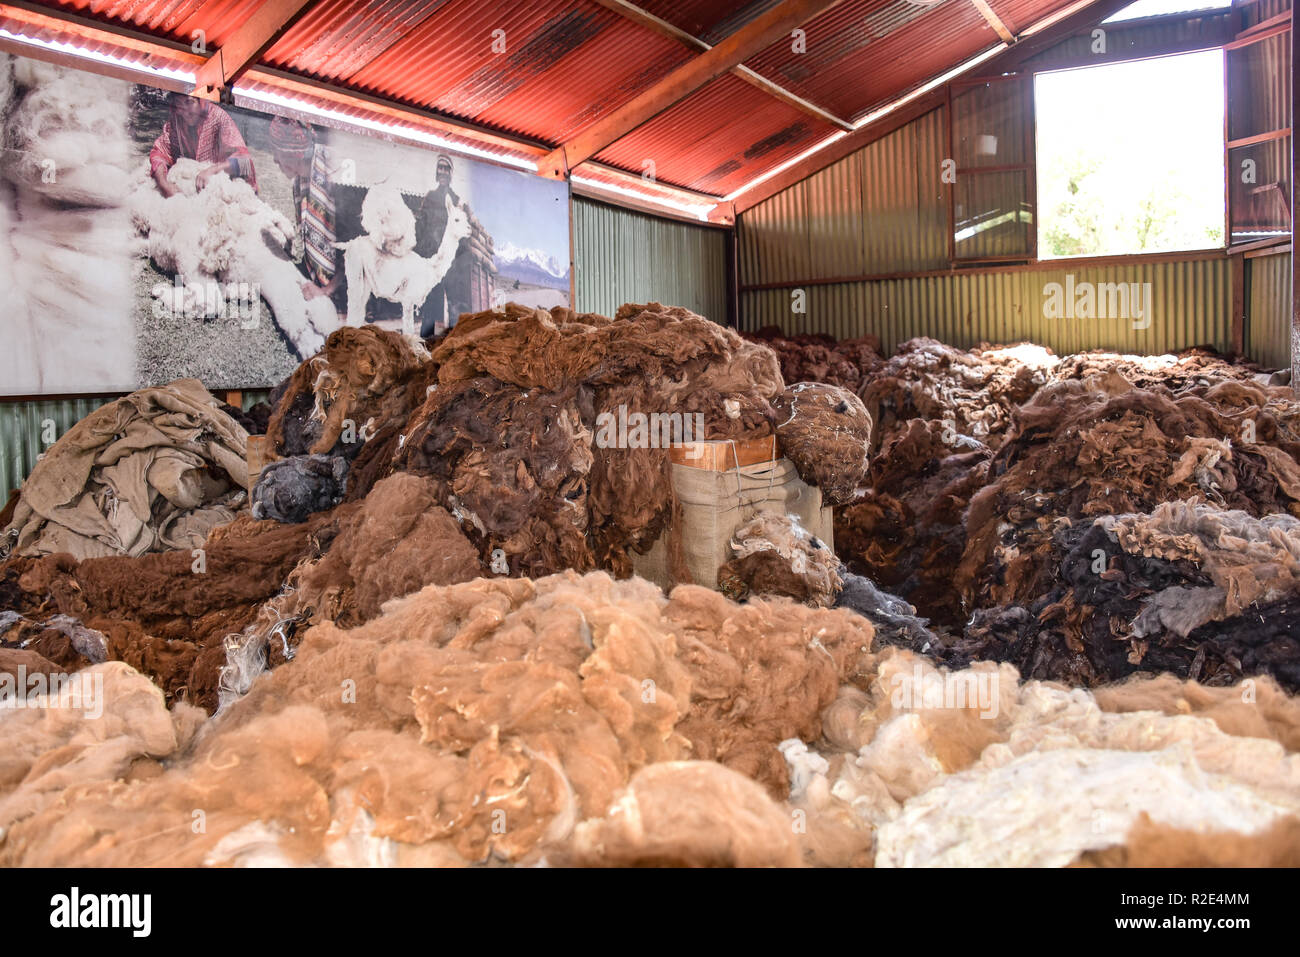 Arequipa, Peru - Oktober 7, 2018: Stapel von raw Alpaka Wolle, die auf ihre Verarbeitung warten für den Einsatz in der Textilindustrie Stockfoto